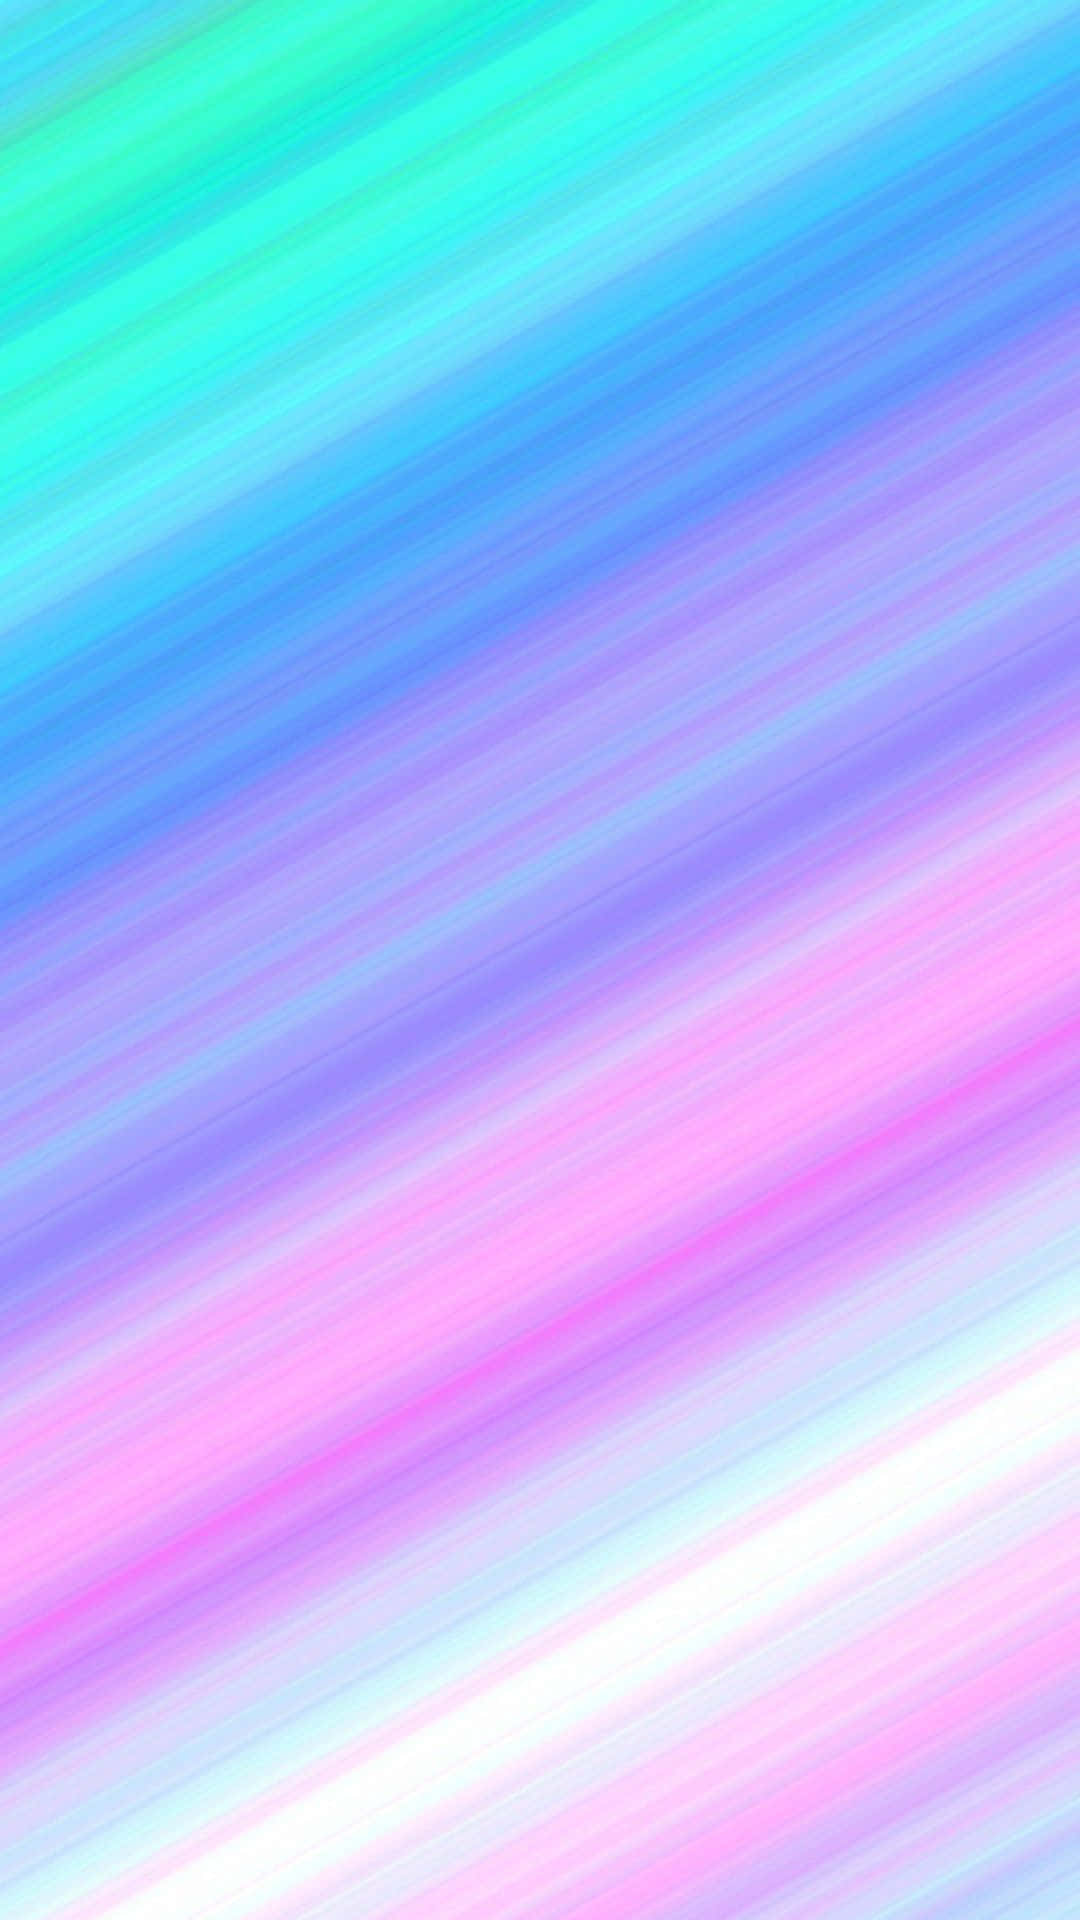 Einhintergrund Mit Einem Blau-rosa Farbverlauf Und Einem Regenbogeneffekt. Wallpaper